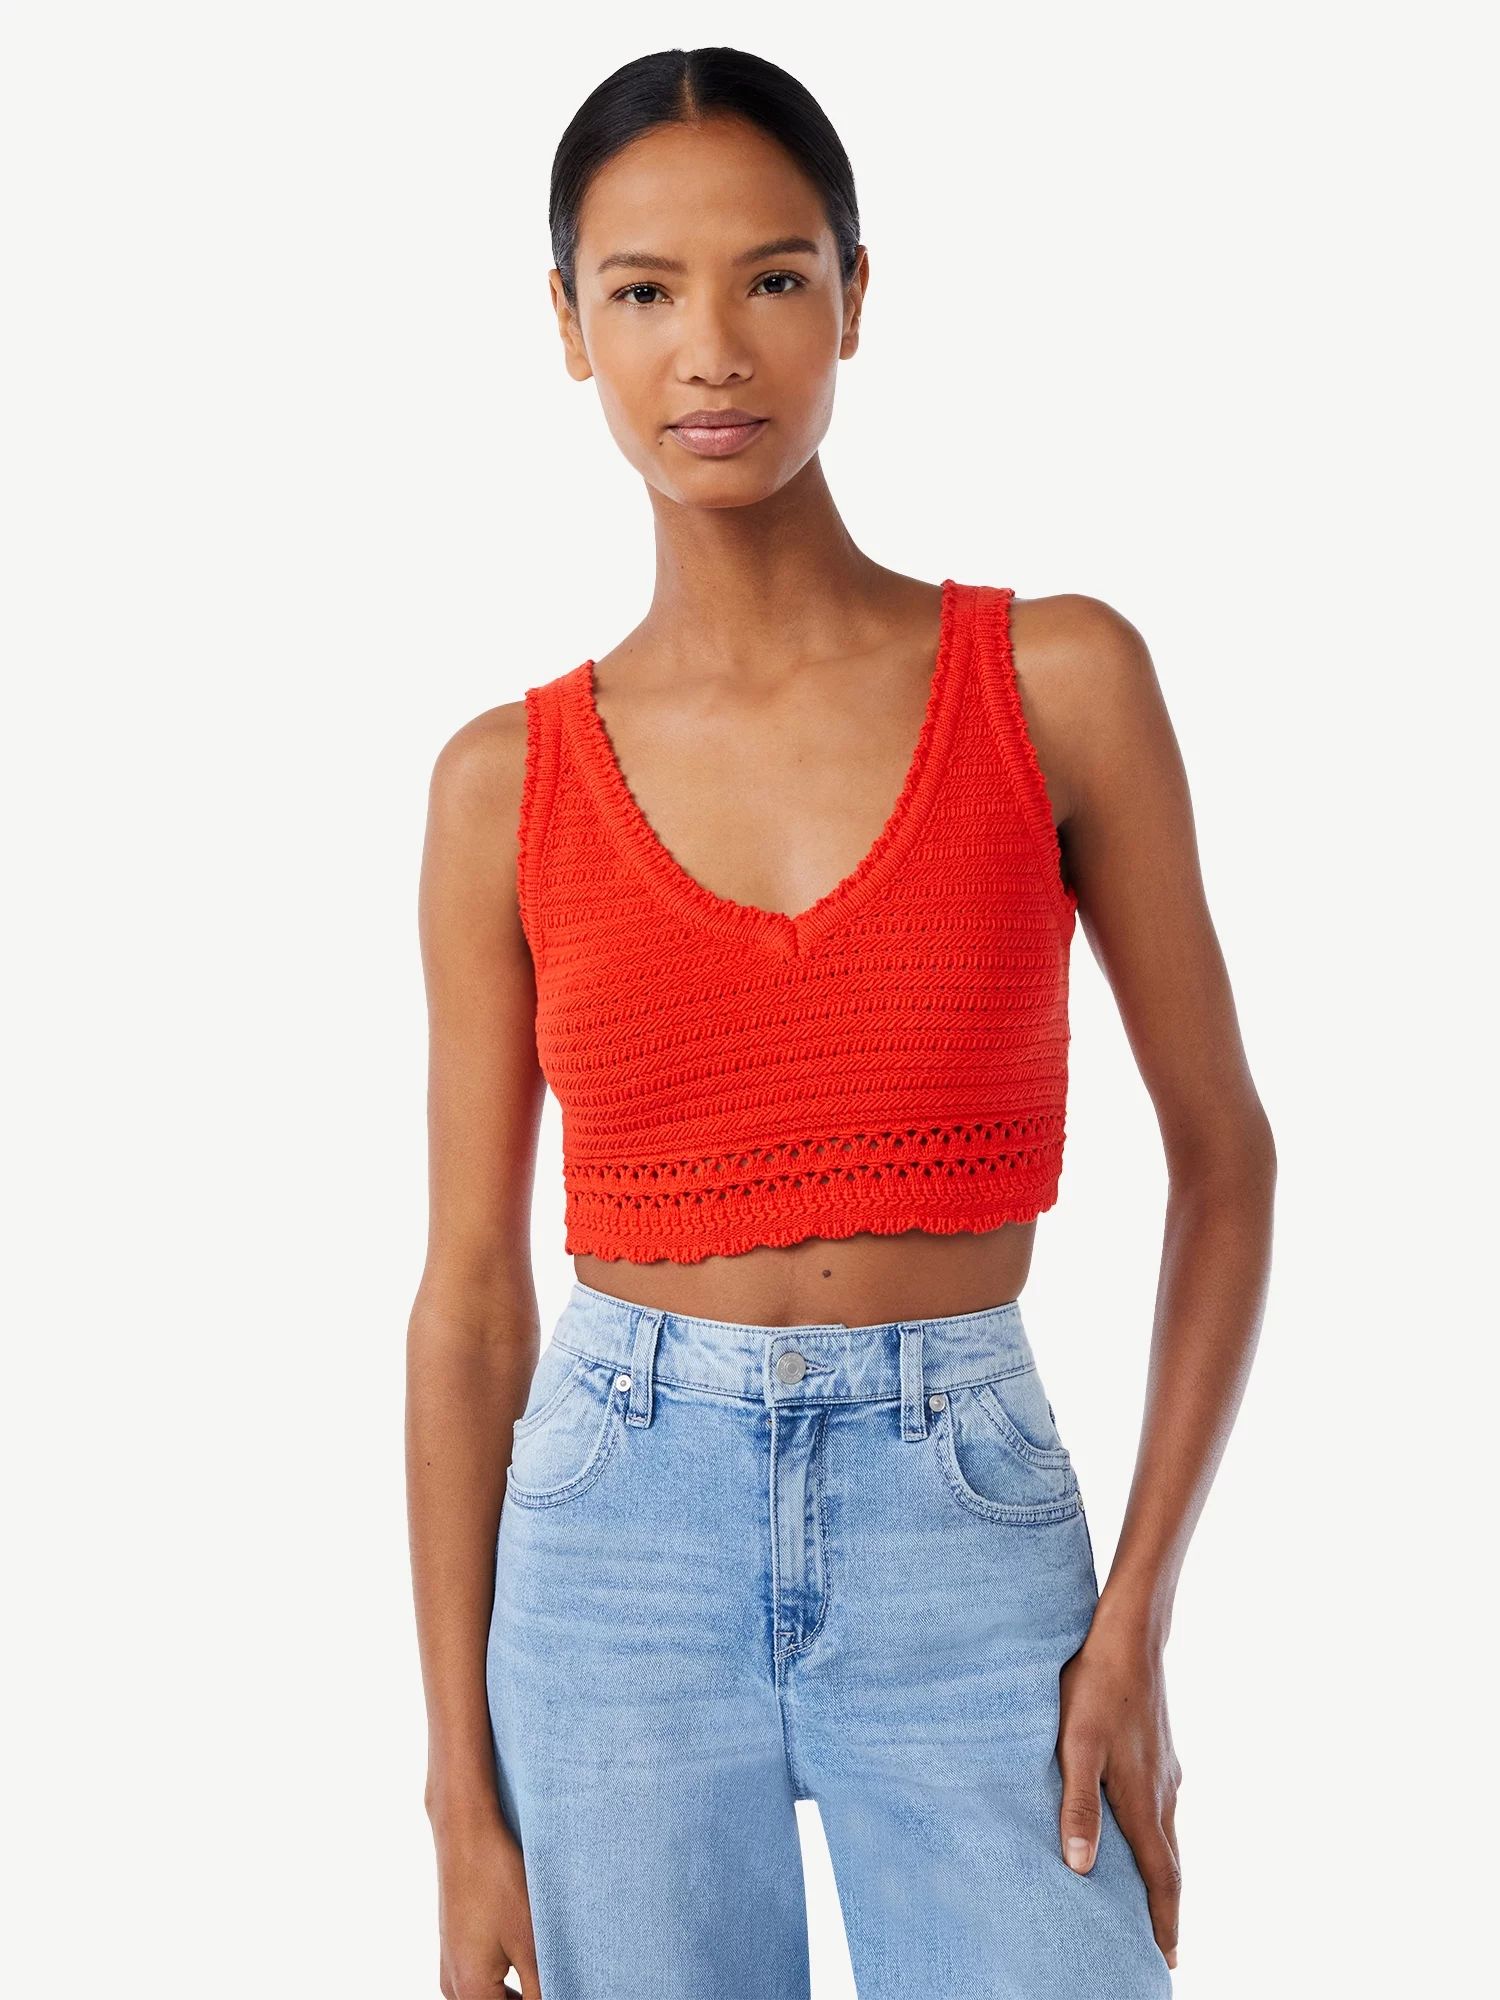 Scoop Women's Crochet Sleeveless Crop Top | Walmart (US)